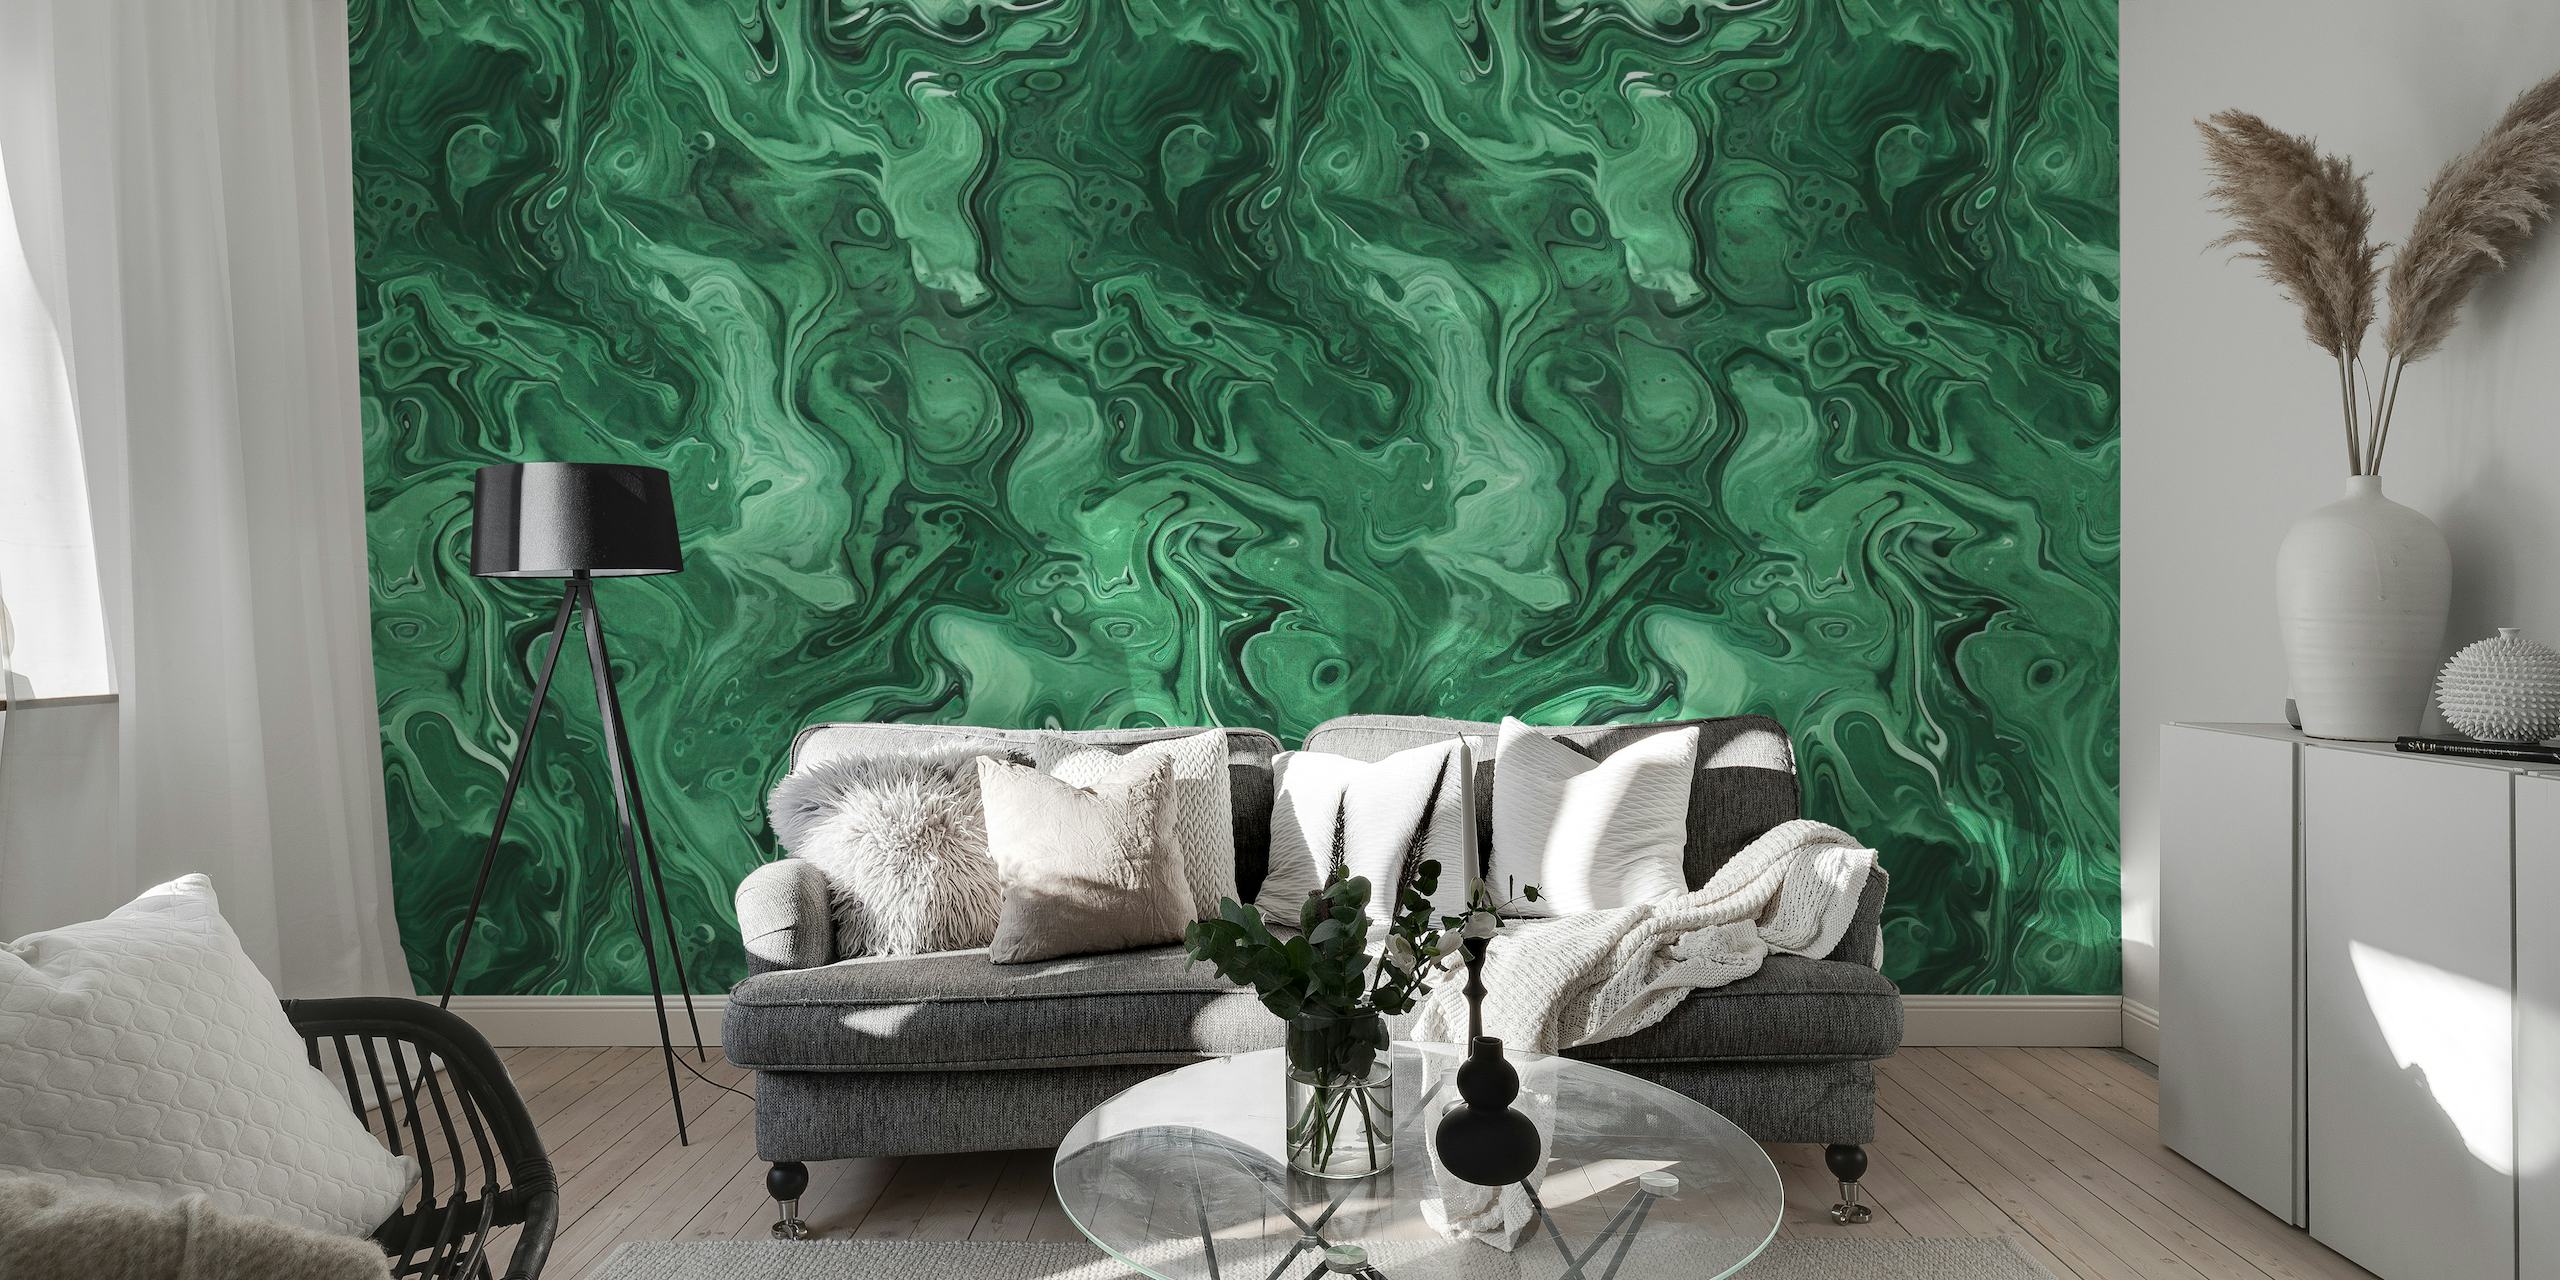 Wandbild mit Aquarellfarben aus grünem Malachit-Edelstein und wirbelnden Jade- und Smaragdmustern